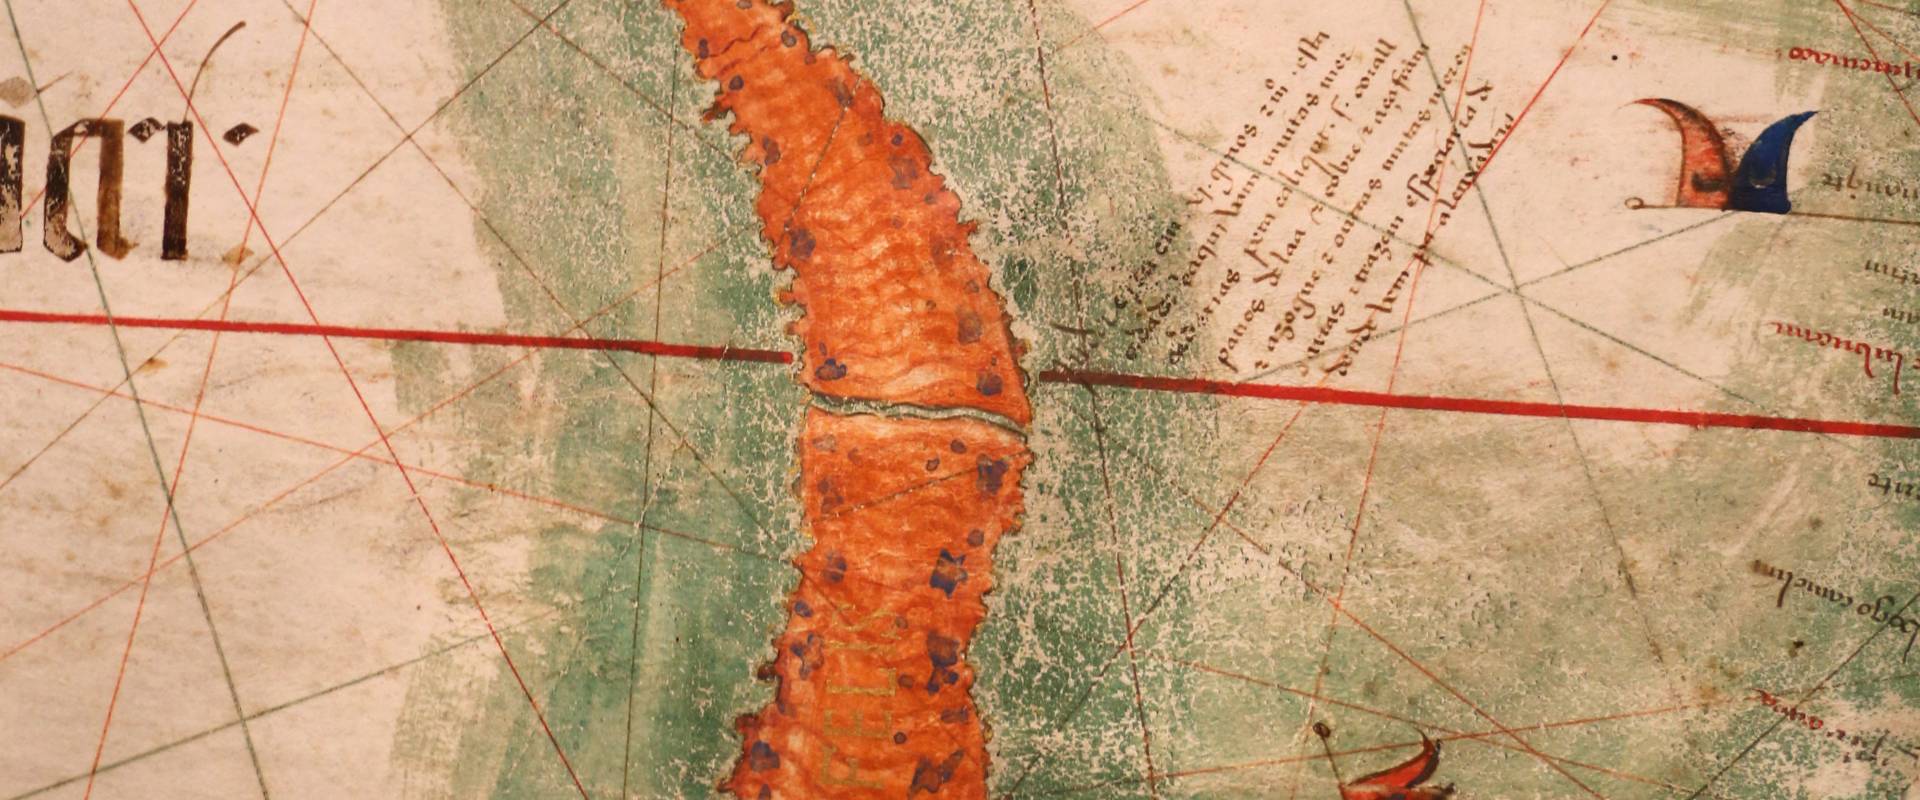 Anonimo portoghese, carta navale per le isole nuovamente trovate in la parte dell'india (de cantino), 1501-02 (bibl. estense) 13 mar rosso foto di Sailko